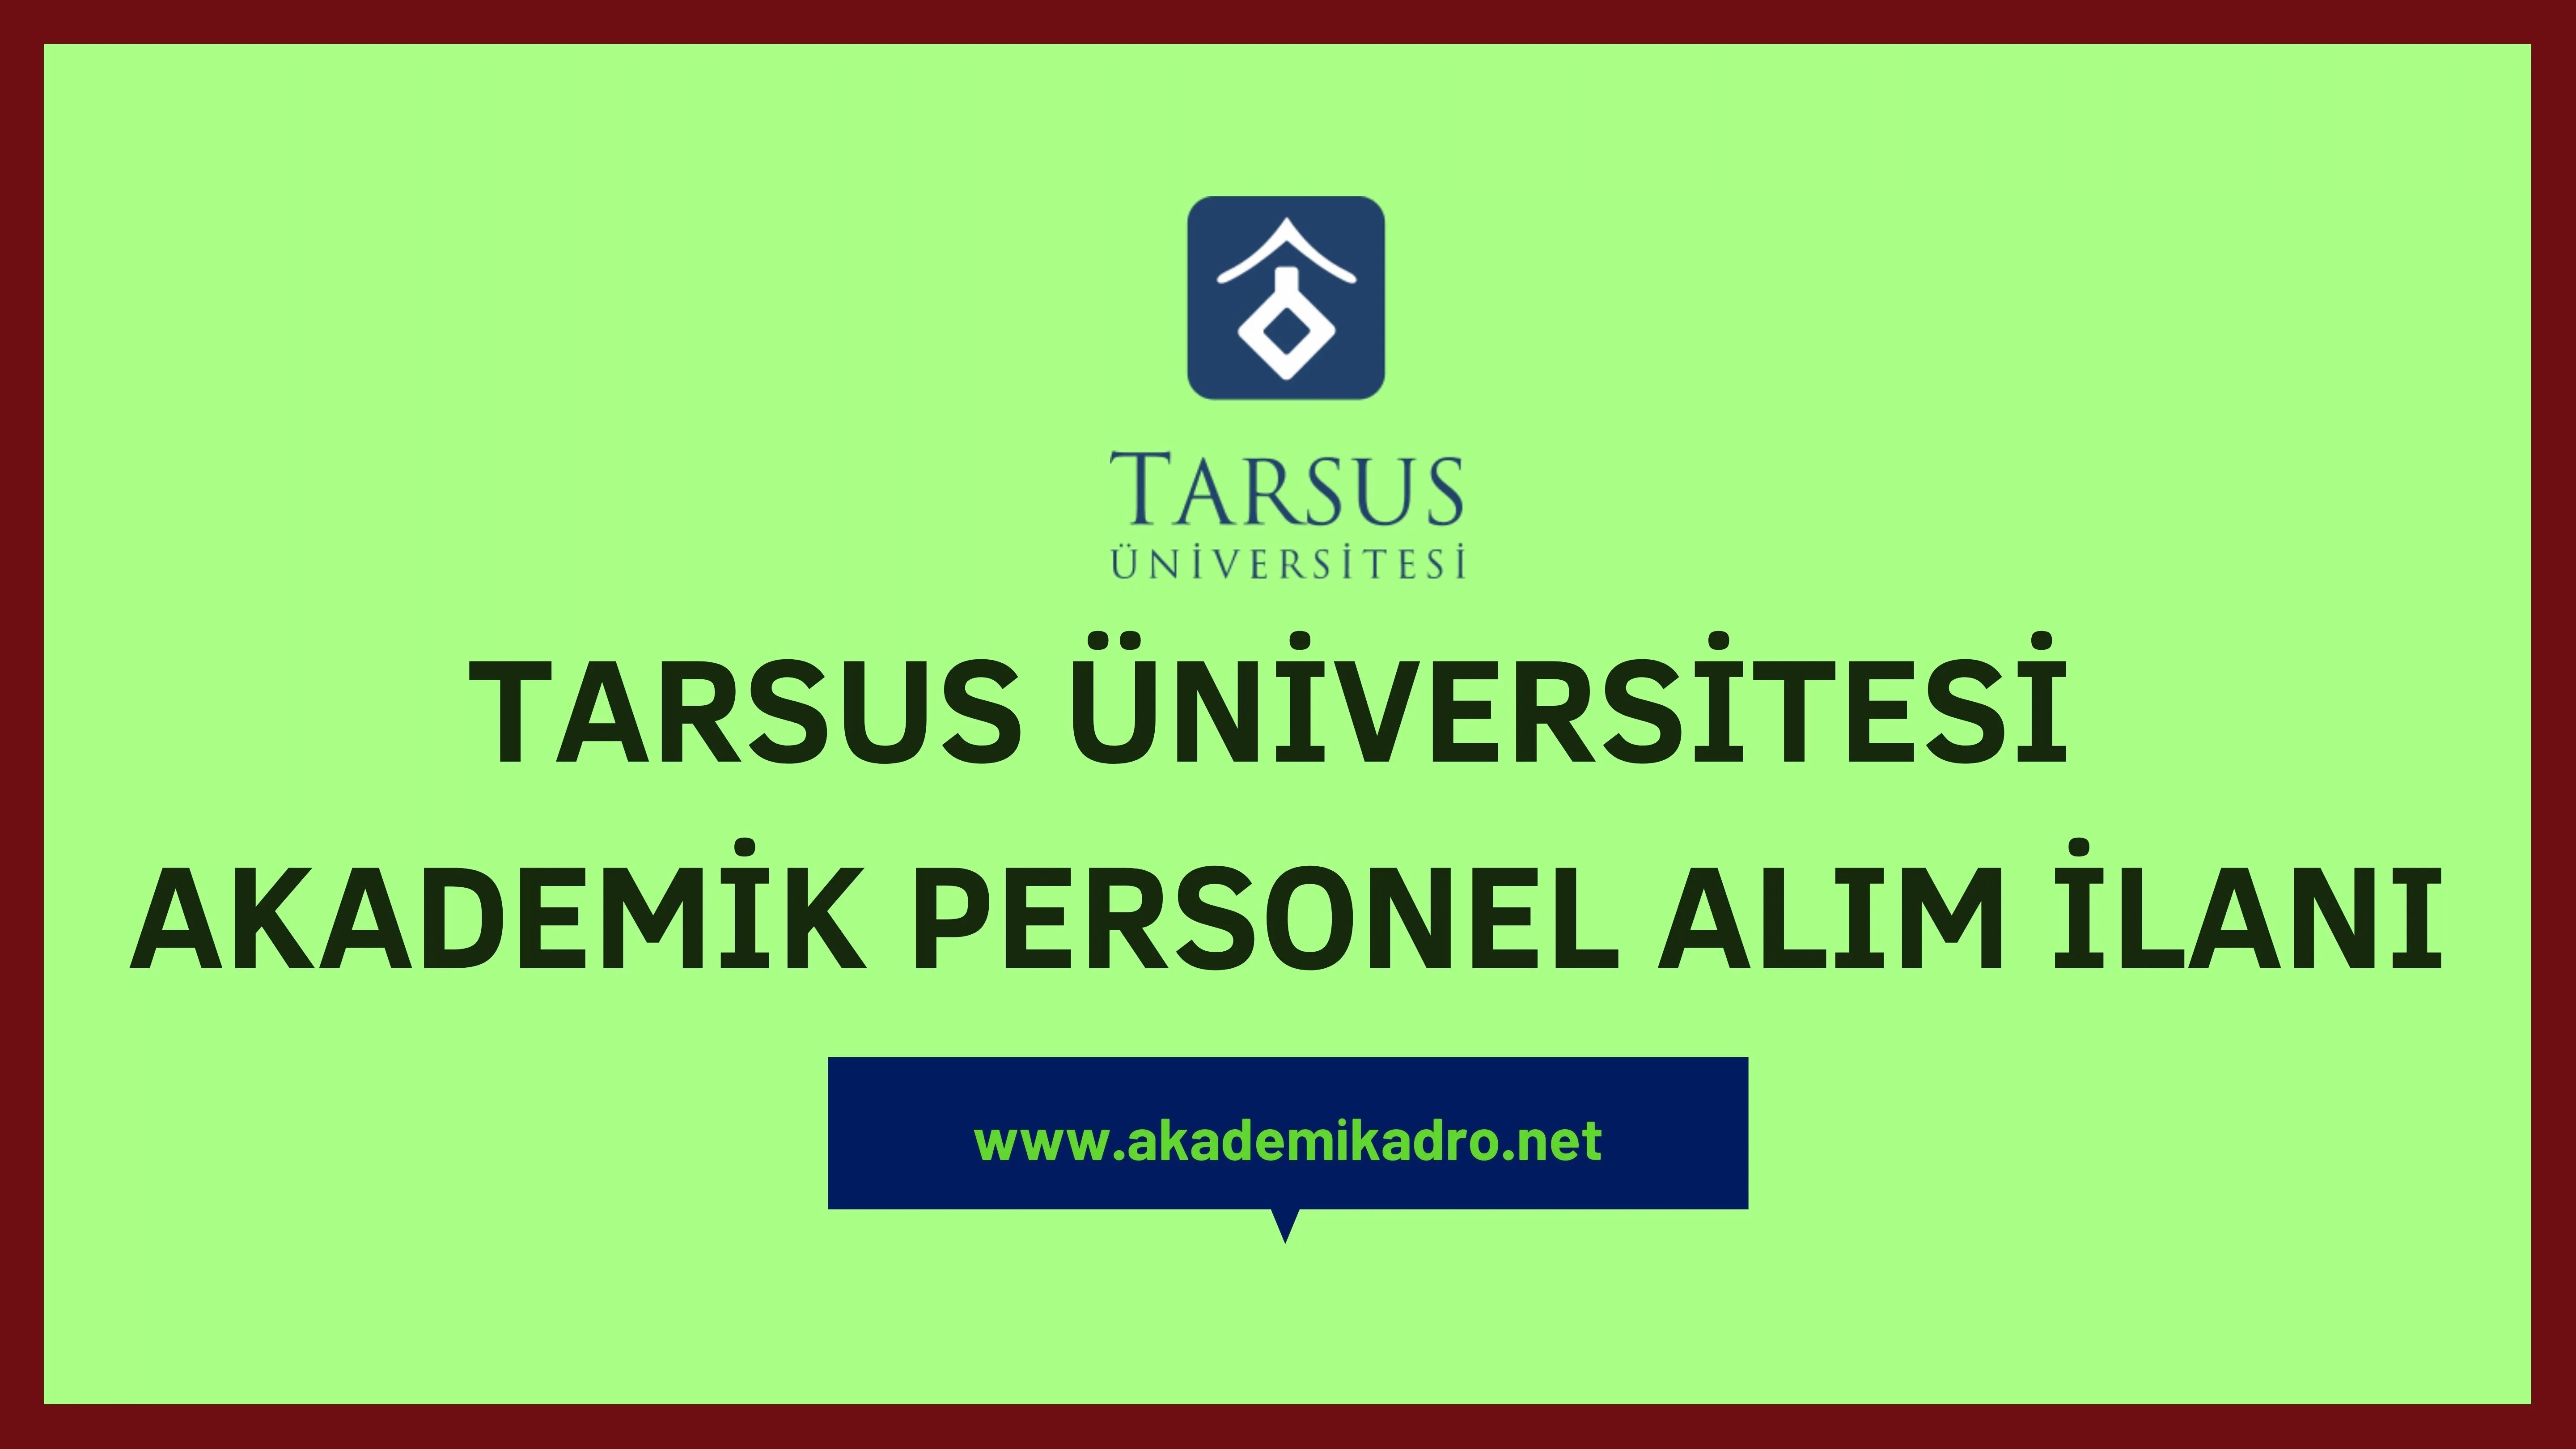 Tarsus Üniversitesi çeşitli branşlarda 9 akademik personel alacak.